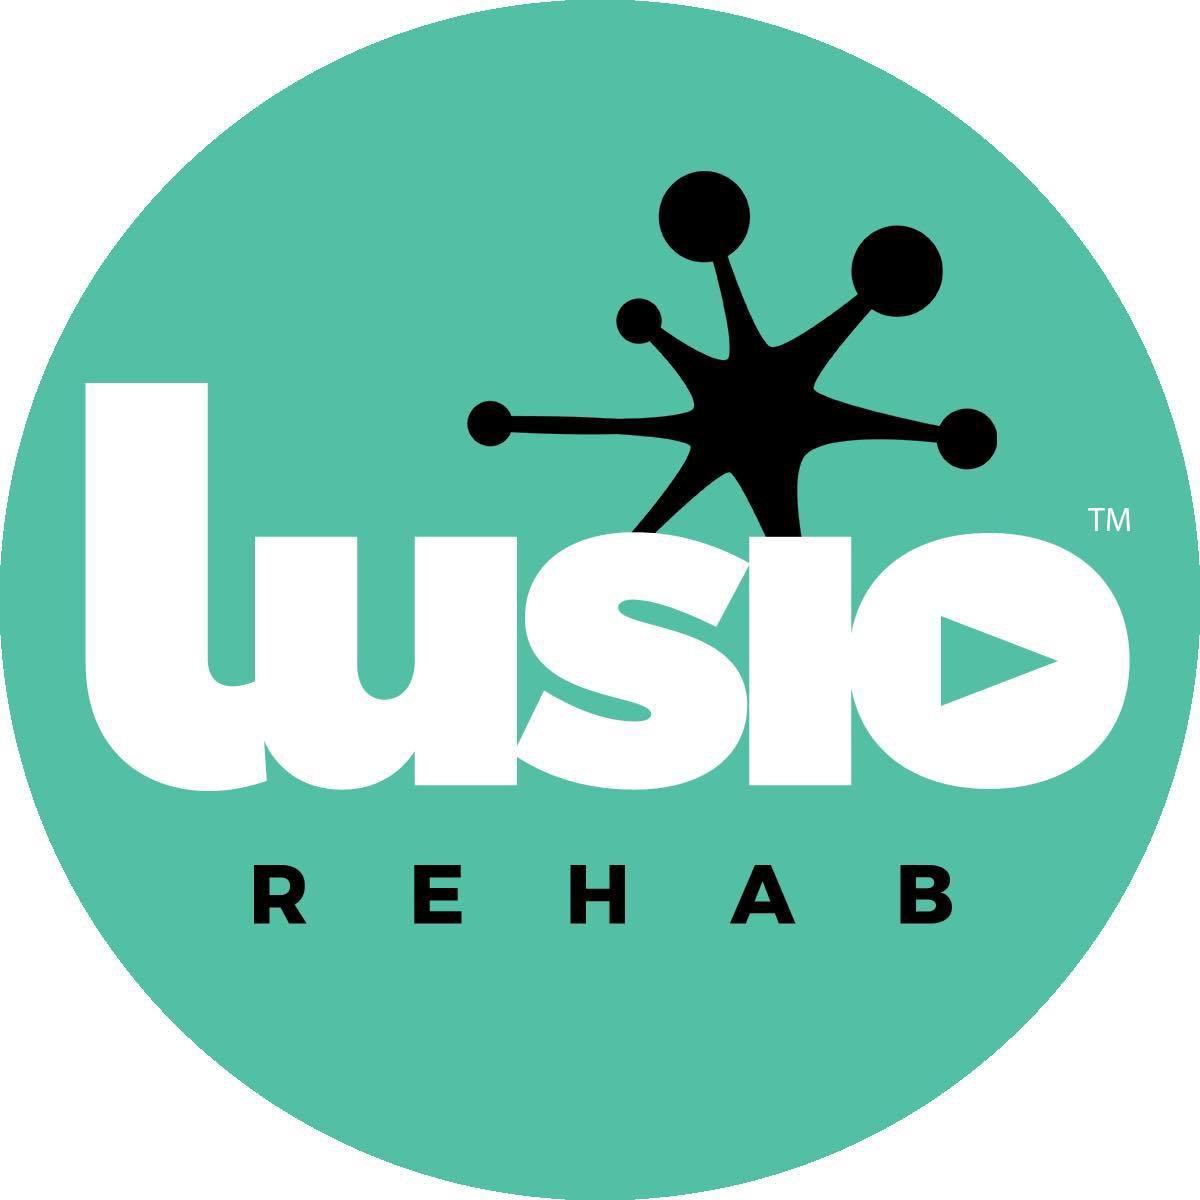 Lusio Rehab